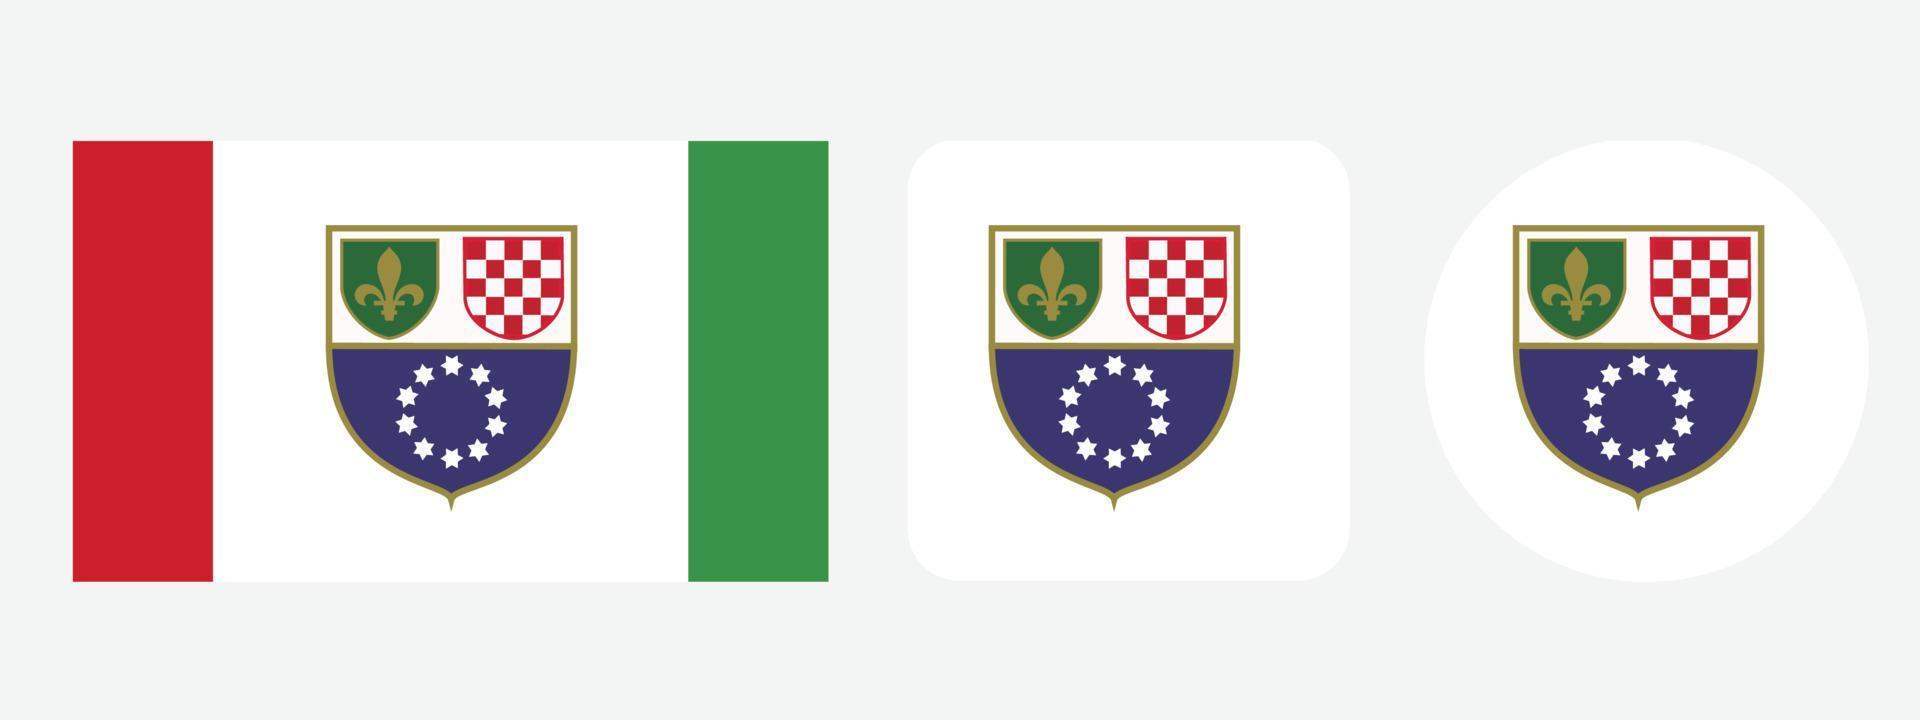 föderation von bosnien und herzegowina flaggensymbol. Web-Icon-Set. Icons Sammlung flach. einfache Vektorillustration. vektor